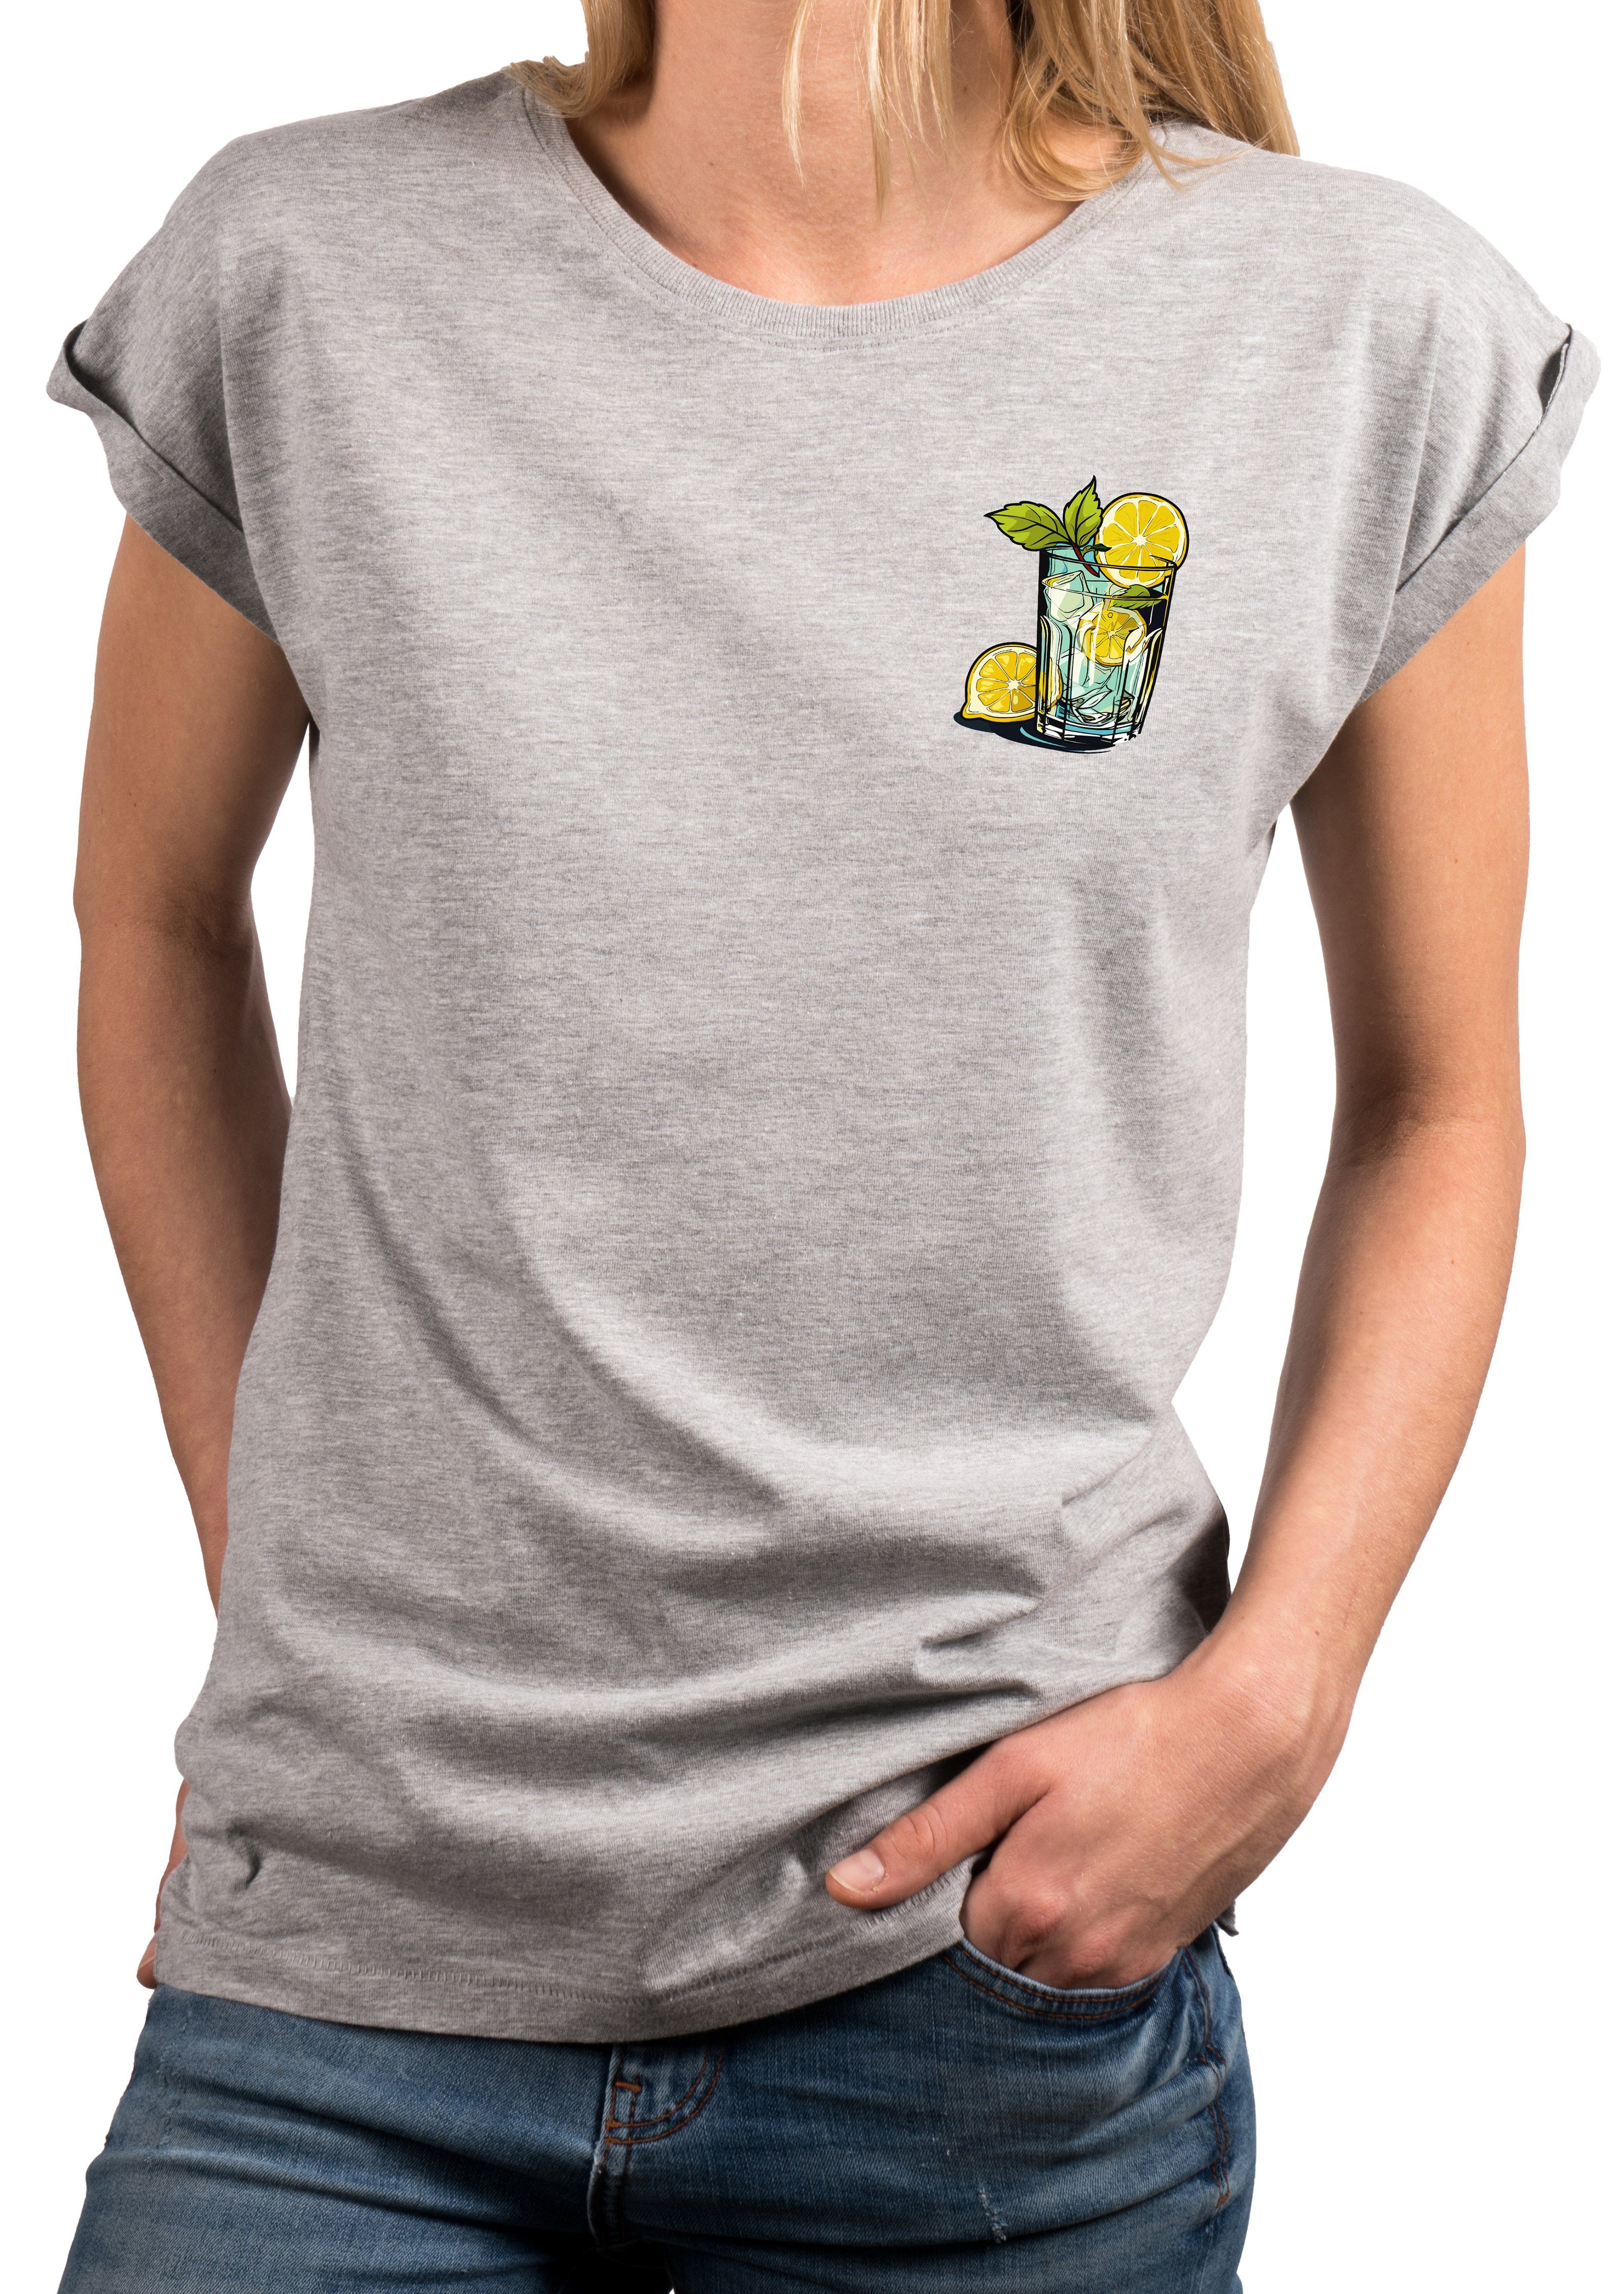 MAKAYA Print-Shirt Gin Tonic Gläser schöne modische Damen Tops Kurzarm Oberteile mit Druck, große Größen